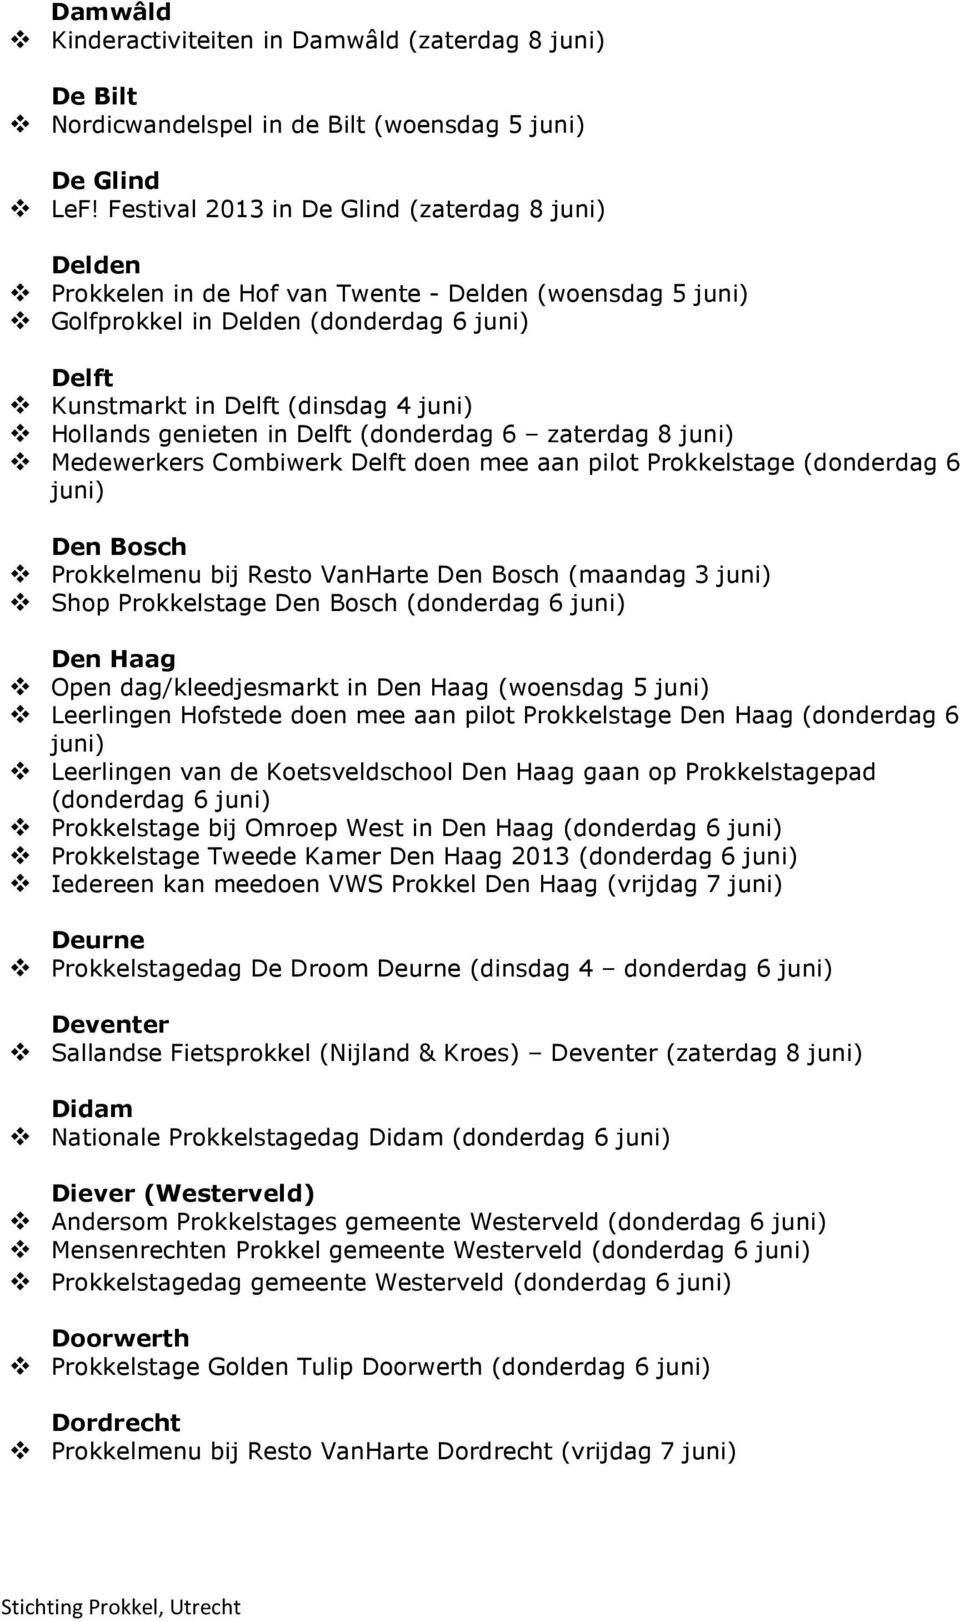 Hollands genieten in Delft (donderdag 6 zaterdag 8 juni) Medewerkers Combiwerk Delft doen mee aan pilot Prokkelstage (donderdag 6 juni) Den Bosch Prokkelmenu bij Resto VanHarte Den Bosch (maandag 3